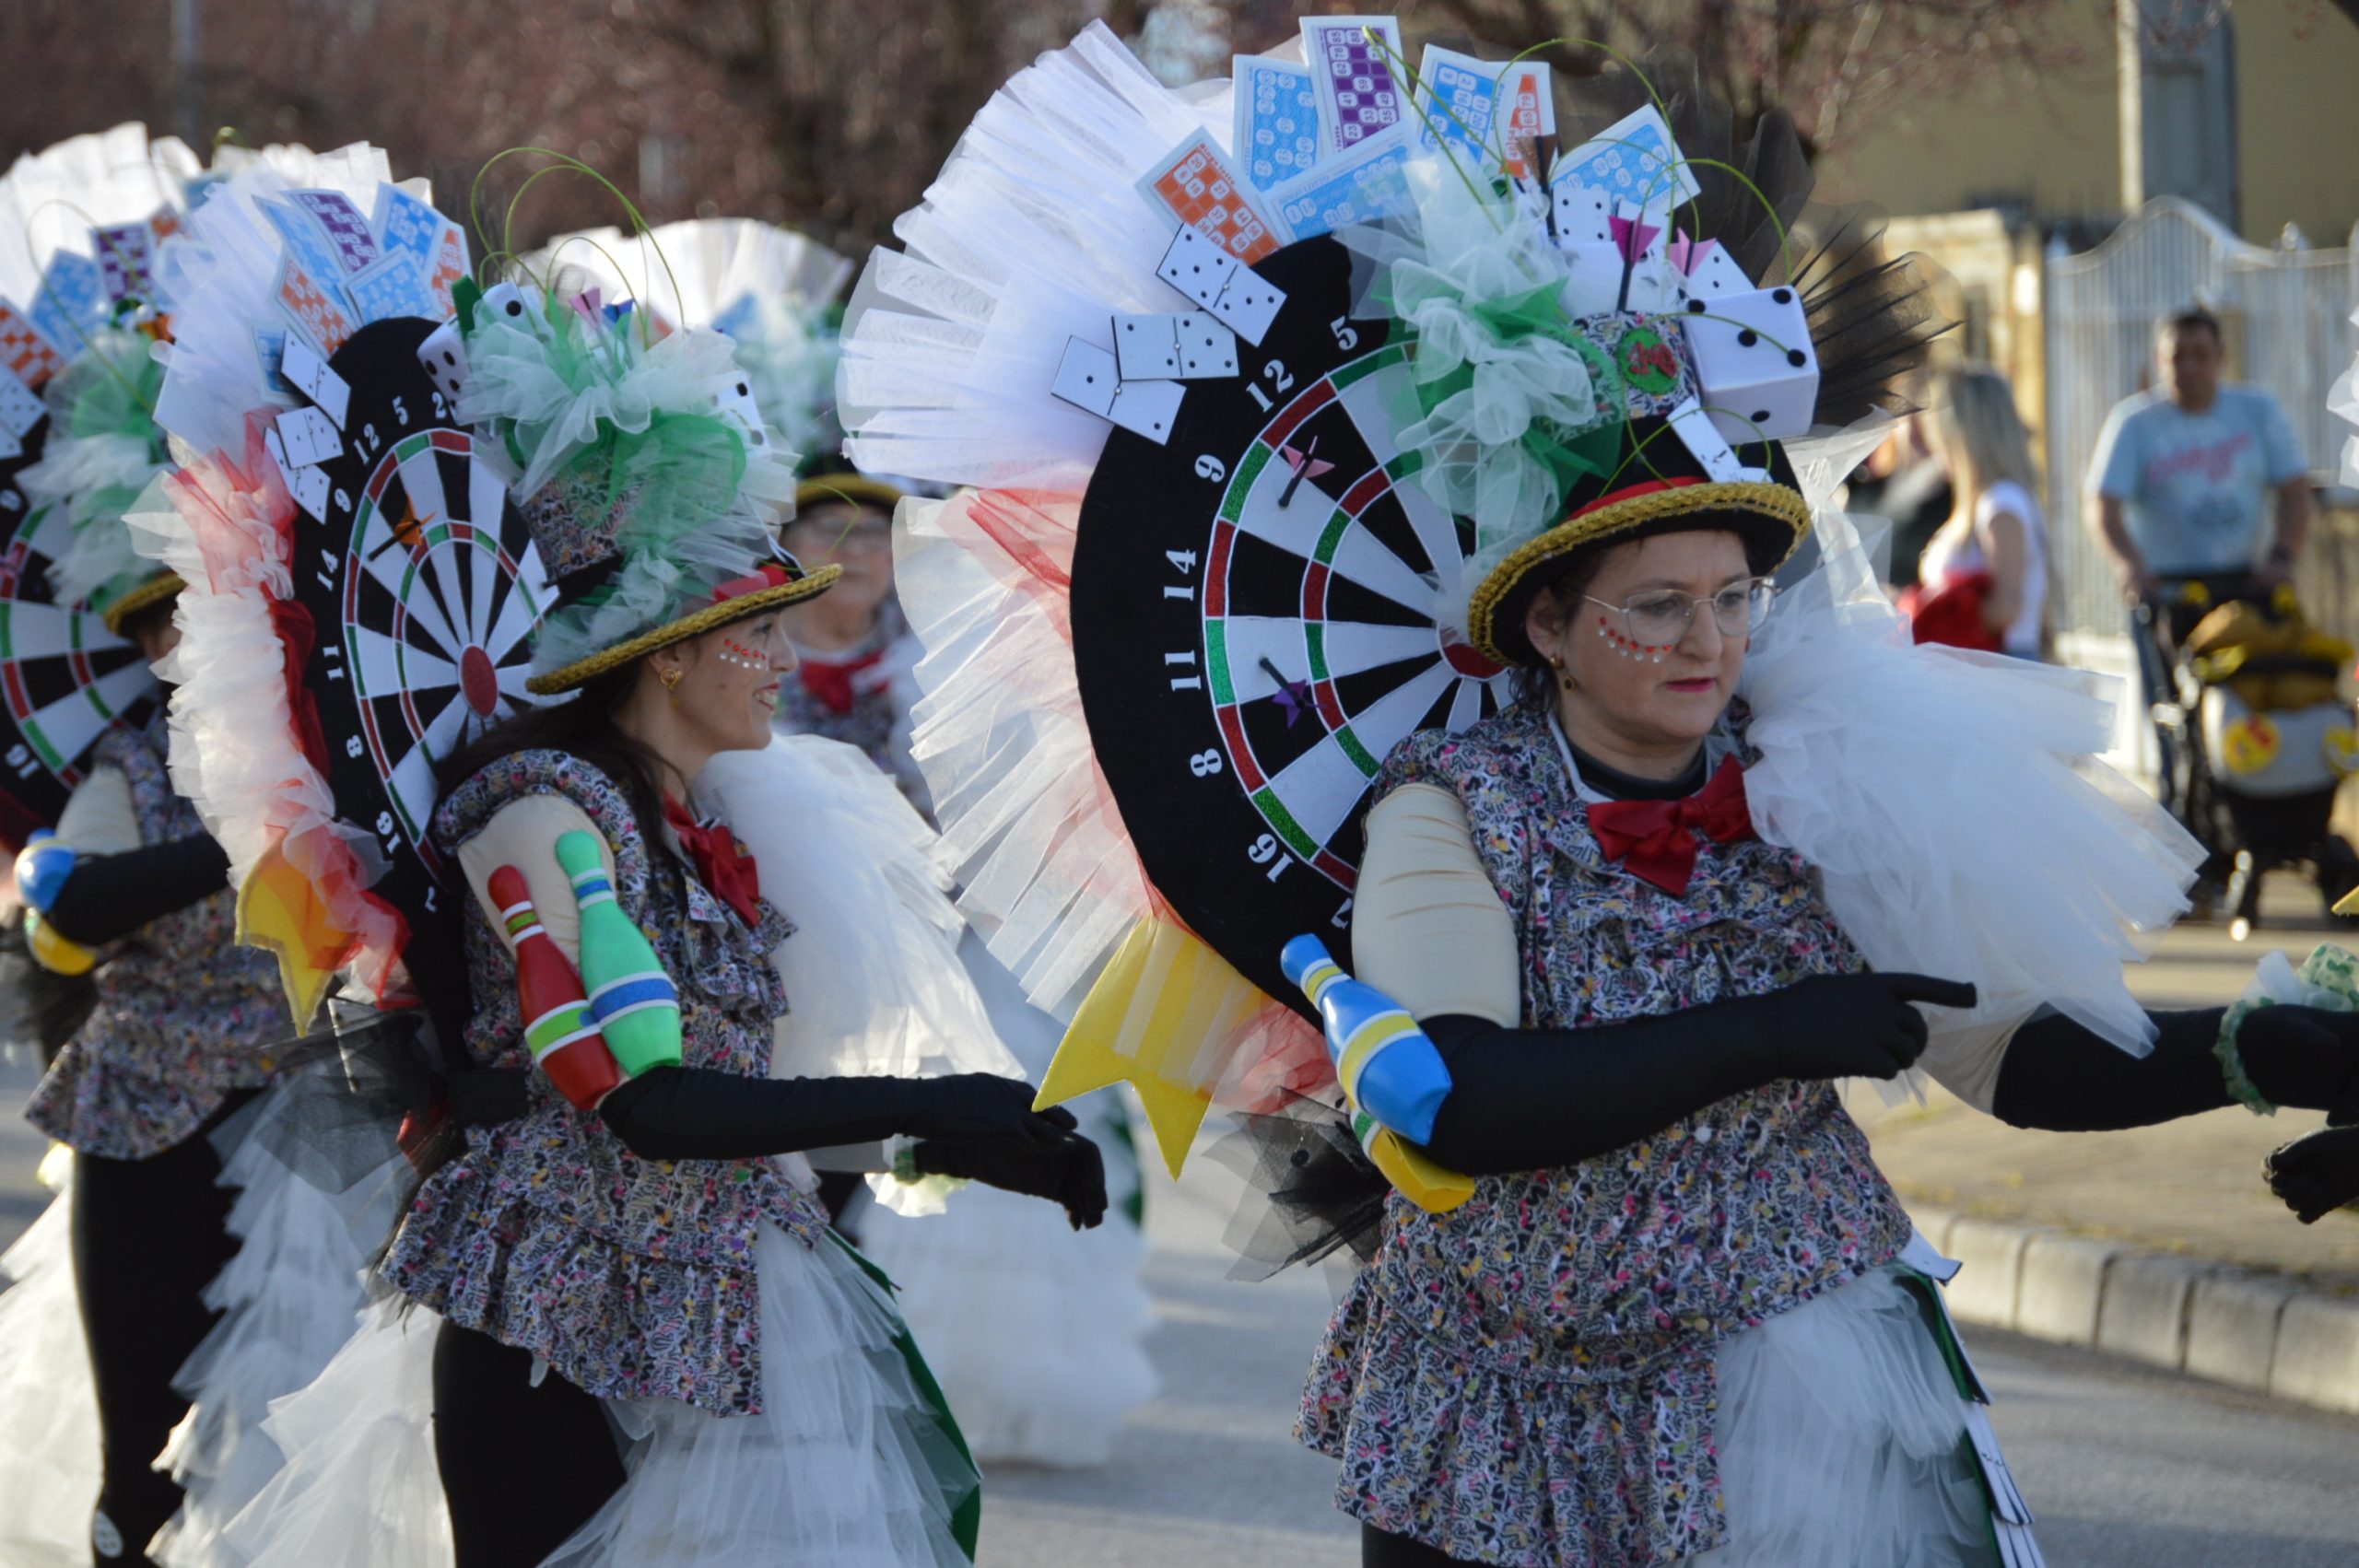 La alegría del Carnaval recorre Cubillos del Sil bajo un sol casi-primaveral 31